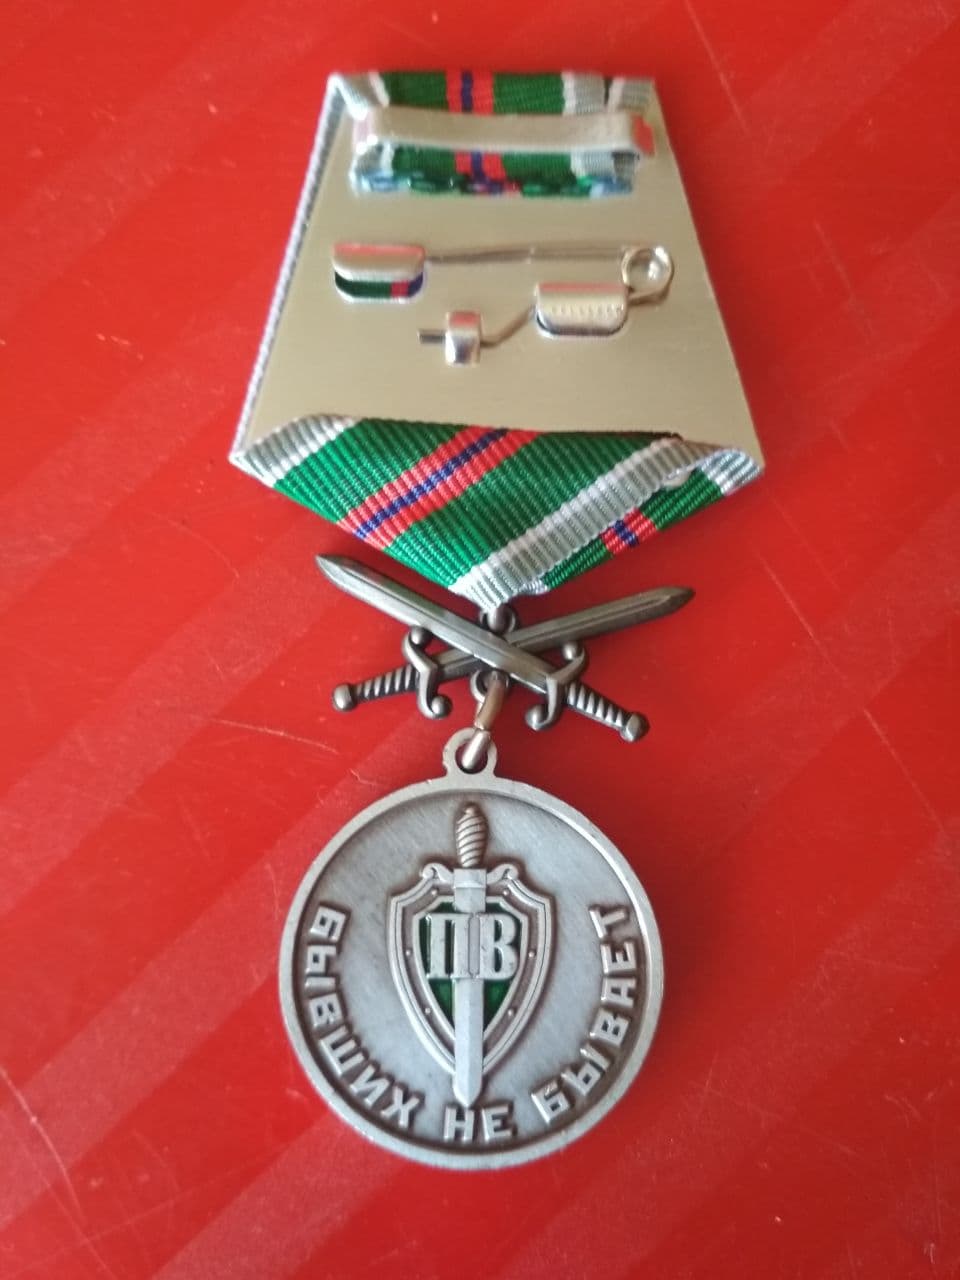 Памятная медаль "Защитник границ отечества. Бывших не бывает"